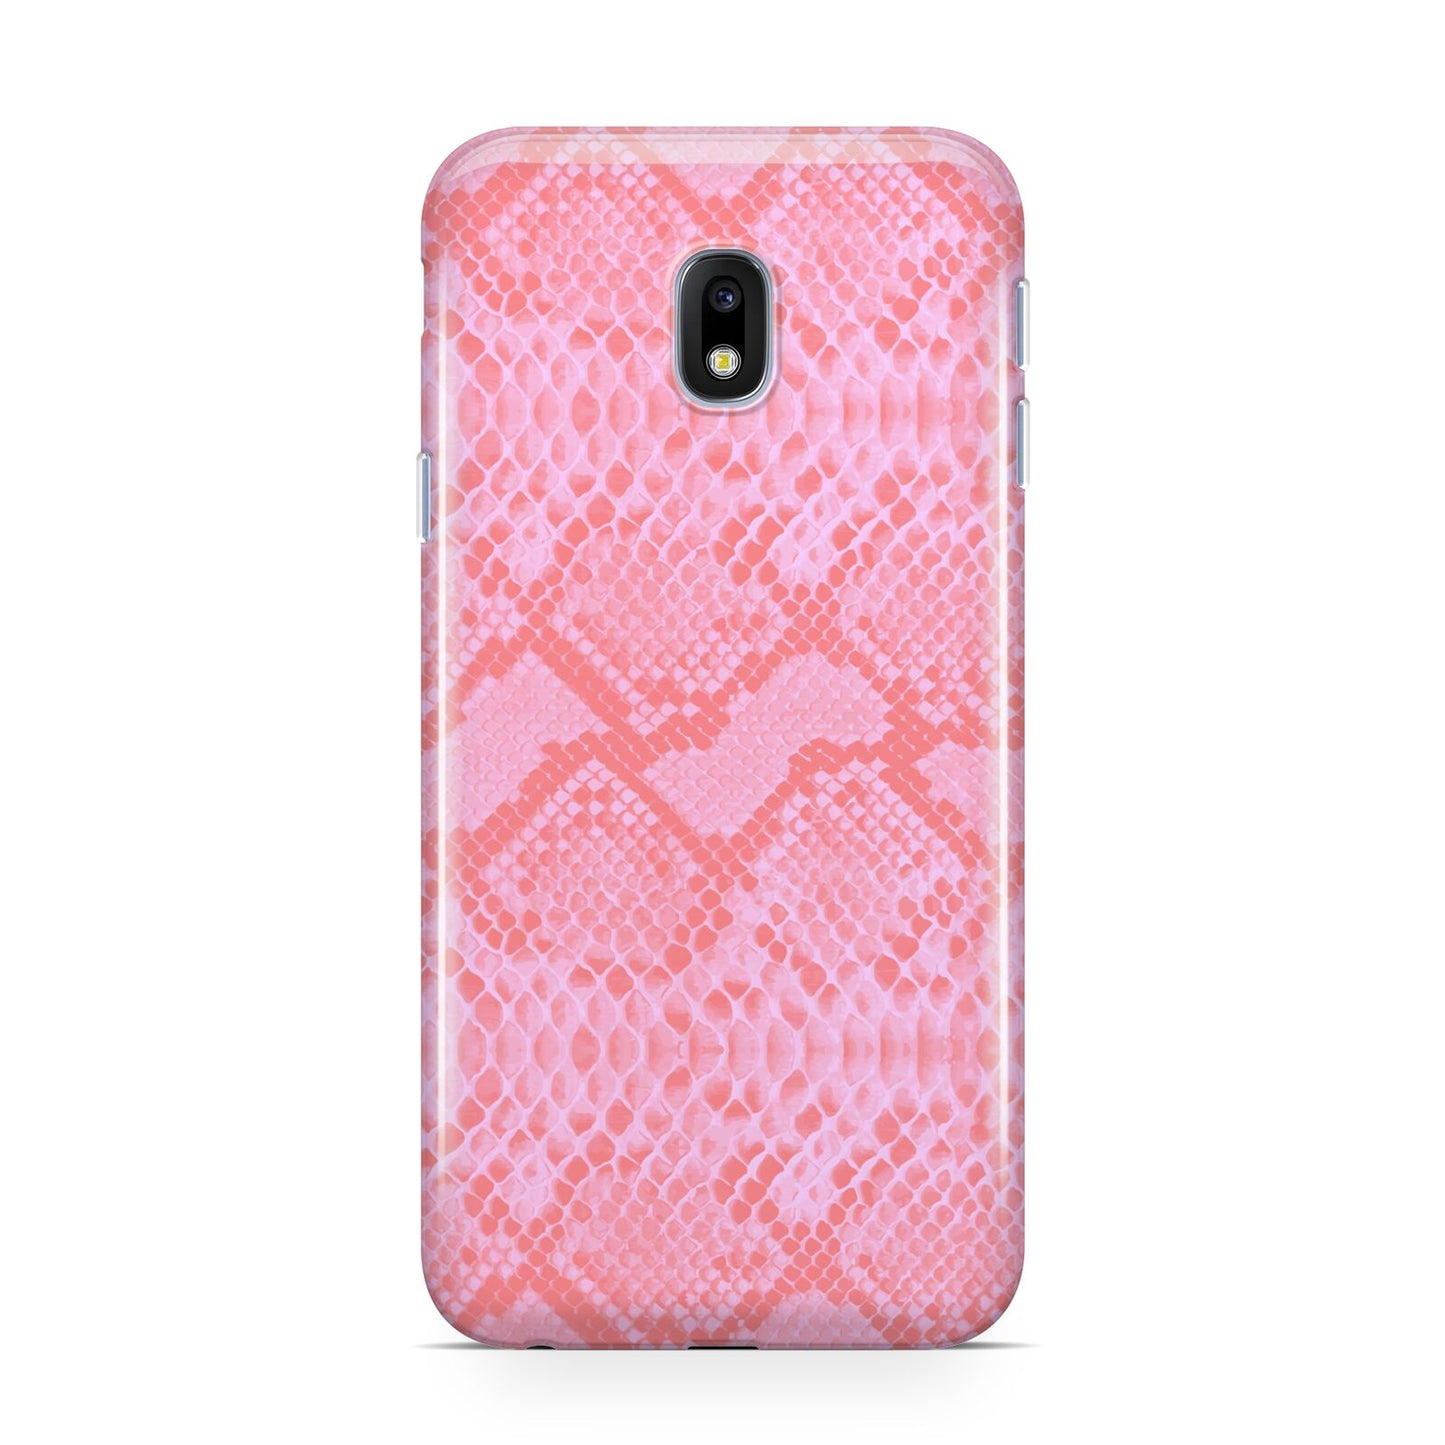 Pink Snakeskin Samsung Galaxy J3 2017 Case